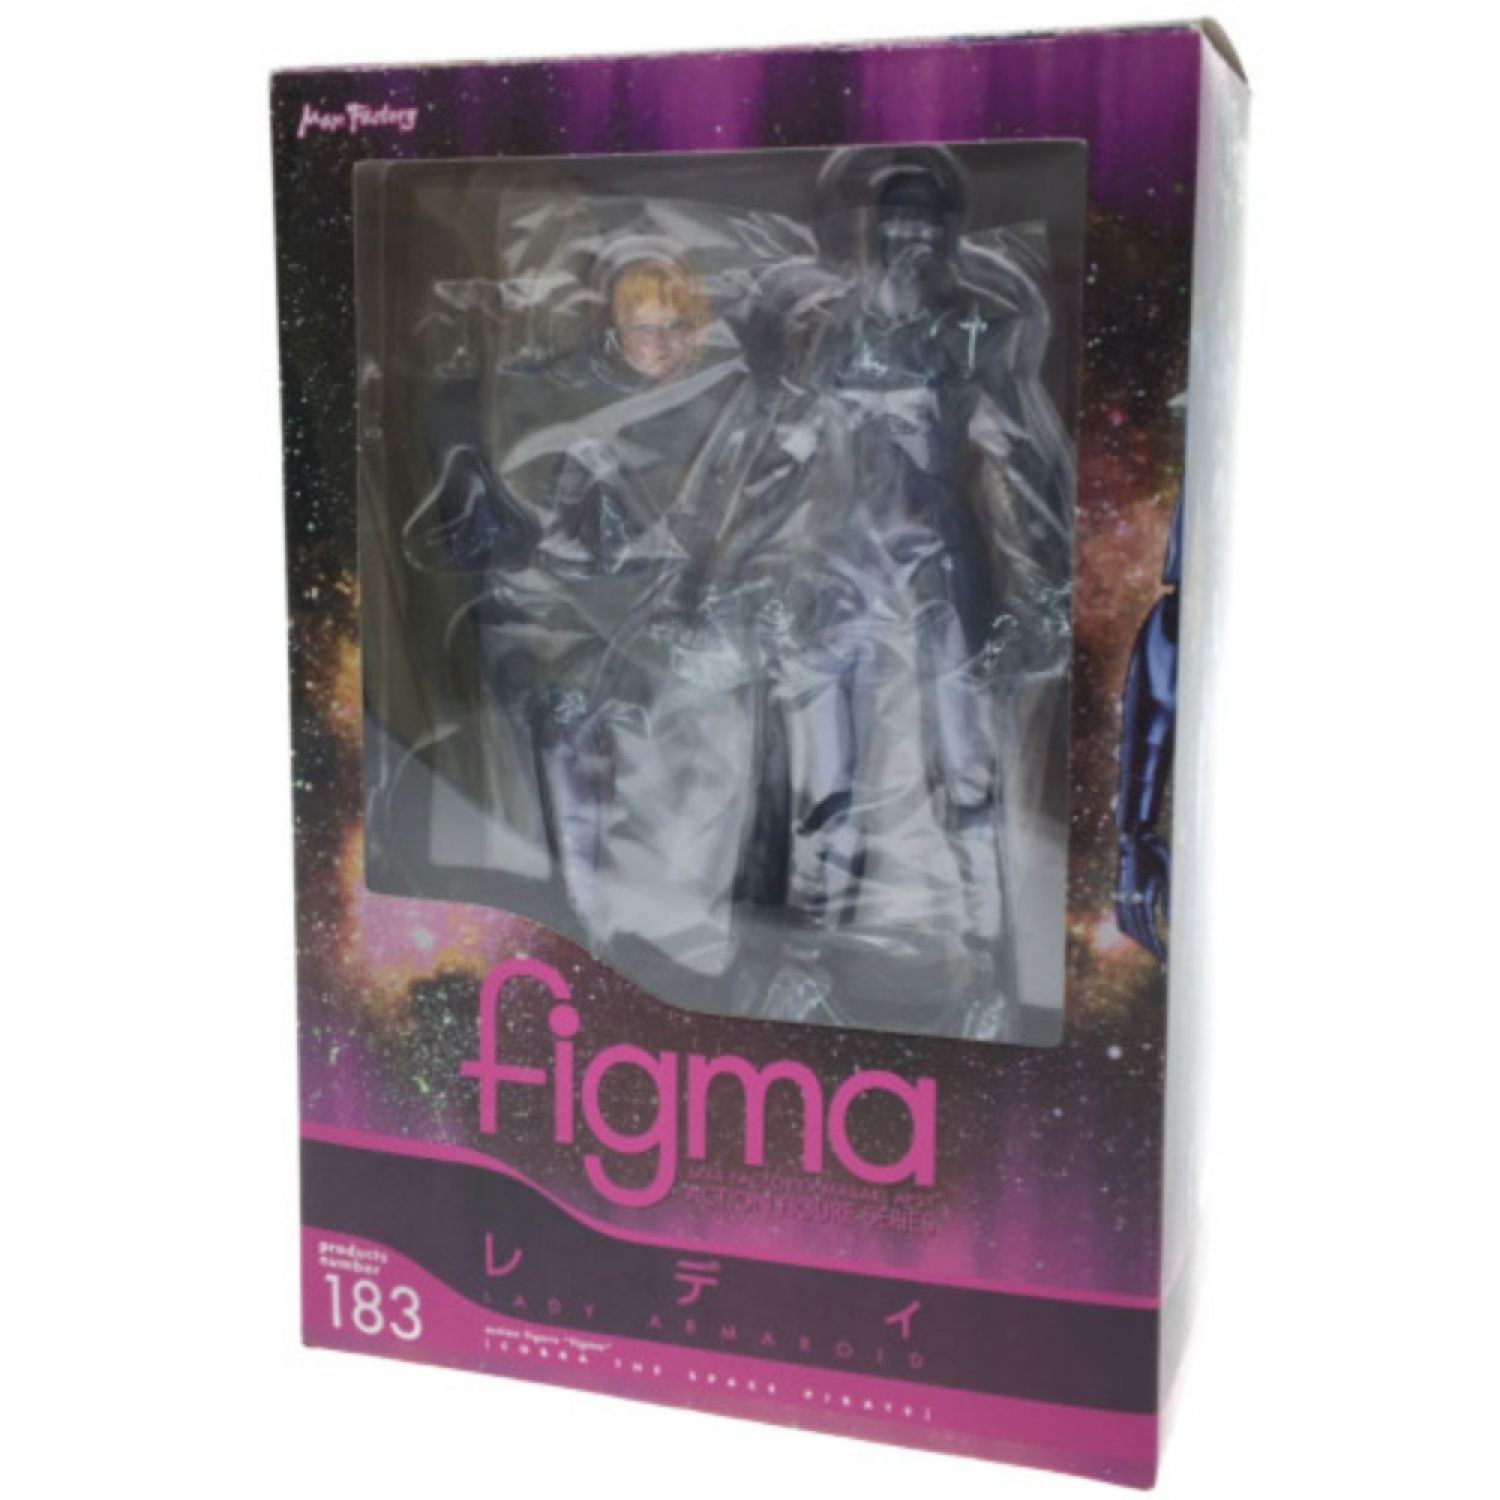 中古】 PLM figma アクションフィギュアシリーズ 183 アーマロイド